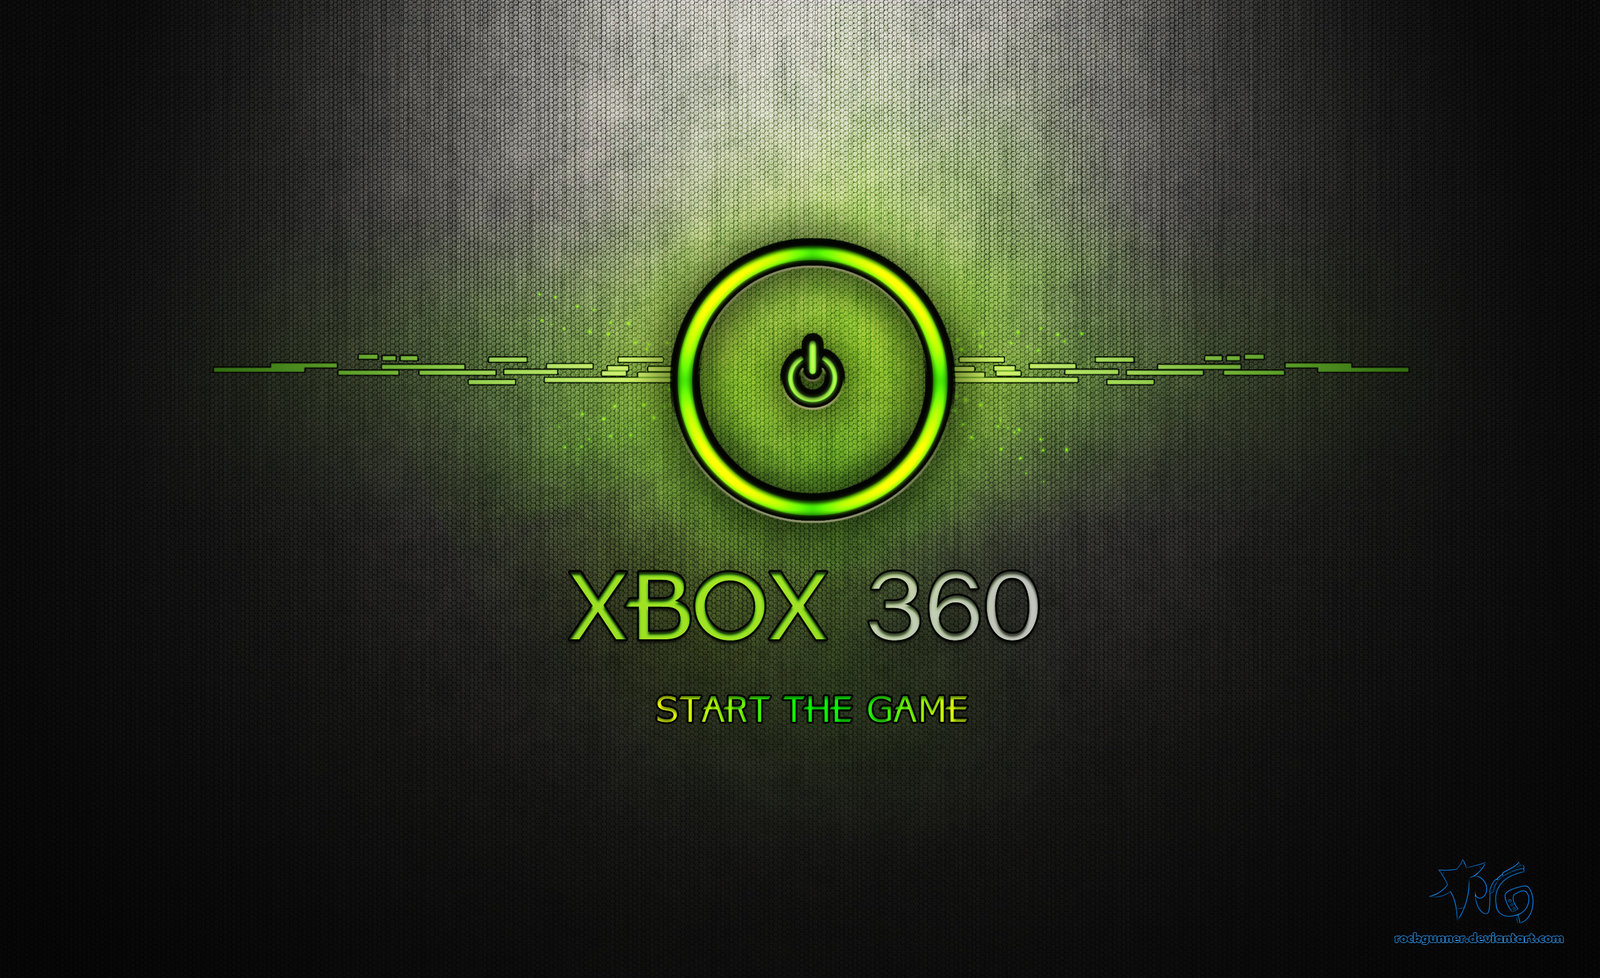 Xbox 360 wallpapers: Giờ đây bạn có thể thể hiện đam mê với dòng sản phẩm Xbox 360 thông qua bộ sưu tập hình nền đẹp mắt. Từ những hình ảnh game quen thuộc đến những hình nền mang phong cách độc đáo, bạn sẽ tìm thấy hình nền trong mơ cho chiếc máy của mình. Xem qua hình ảnh để tìm những trải nghiệm mới và cập nhật cho thế giới game của mình.